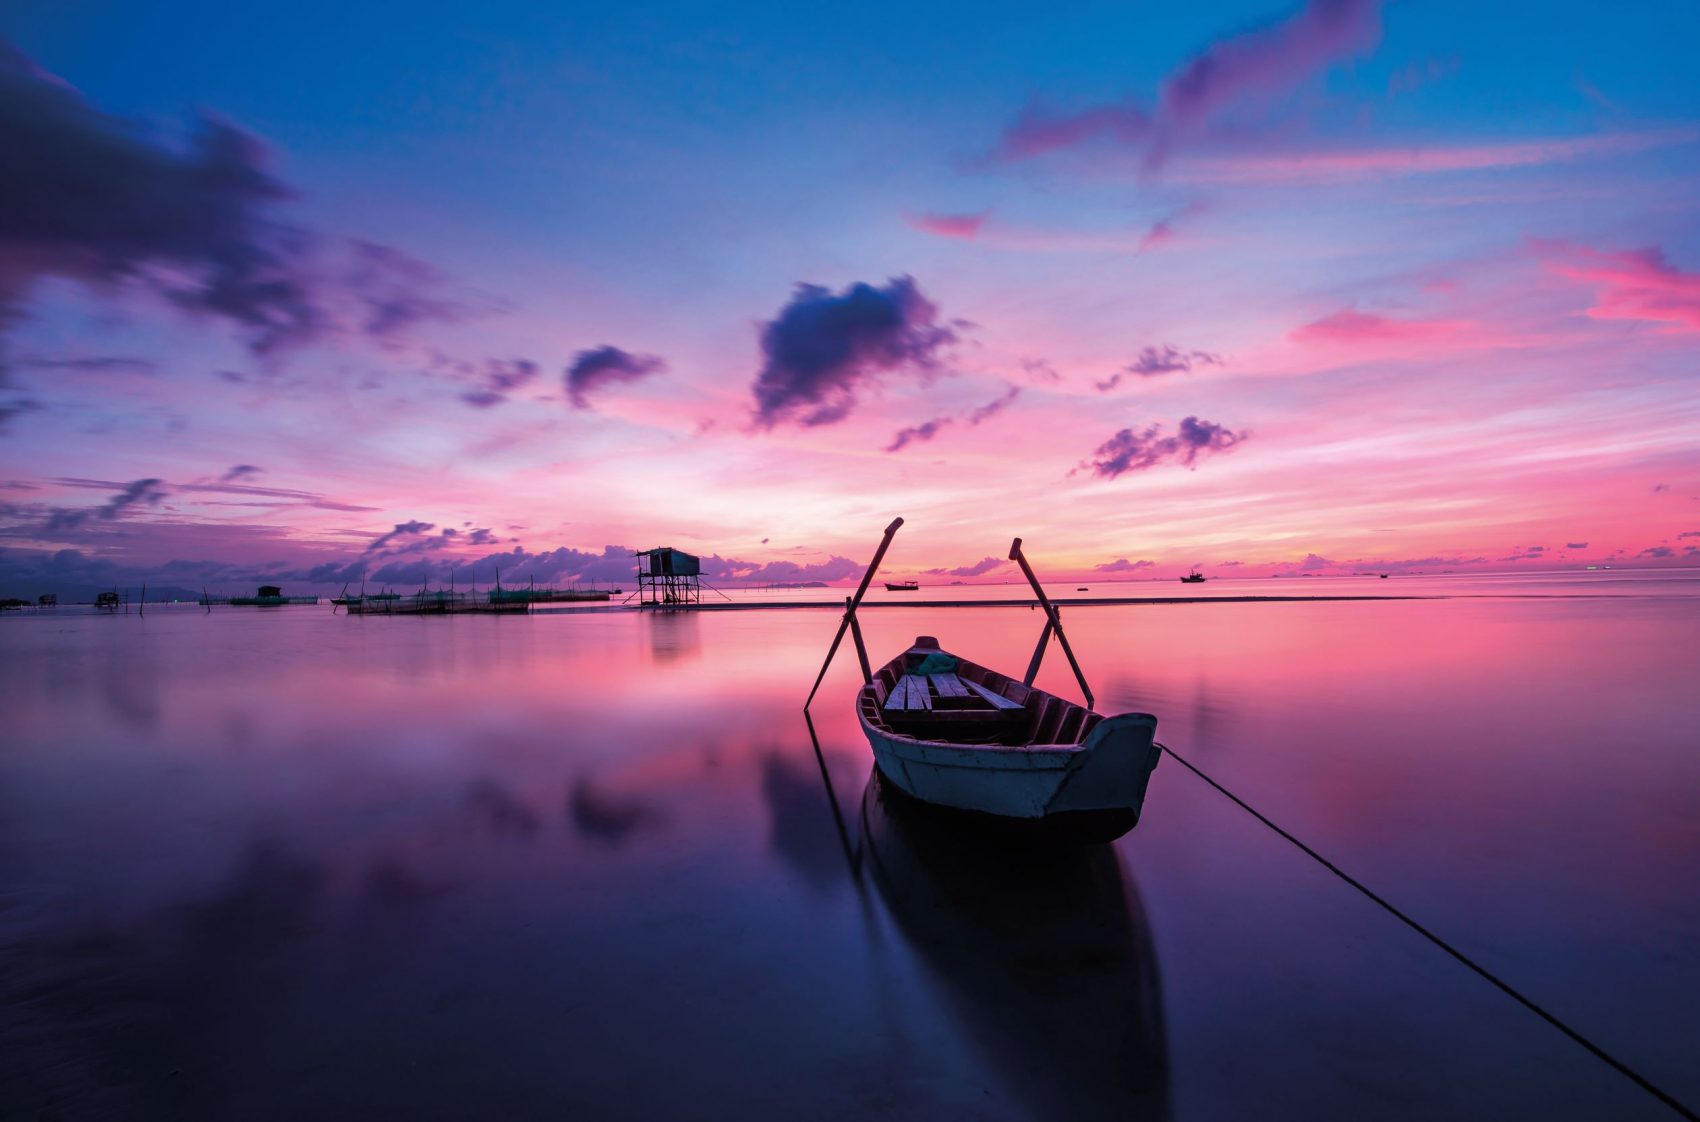 Vene peilityynessä vedessä violetissa valossa auringonnousun aikaan